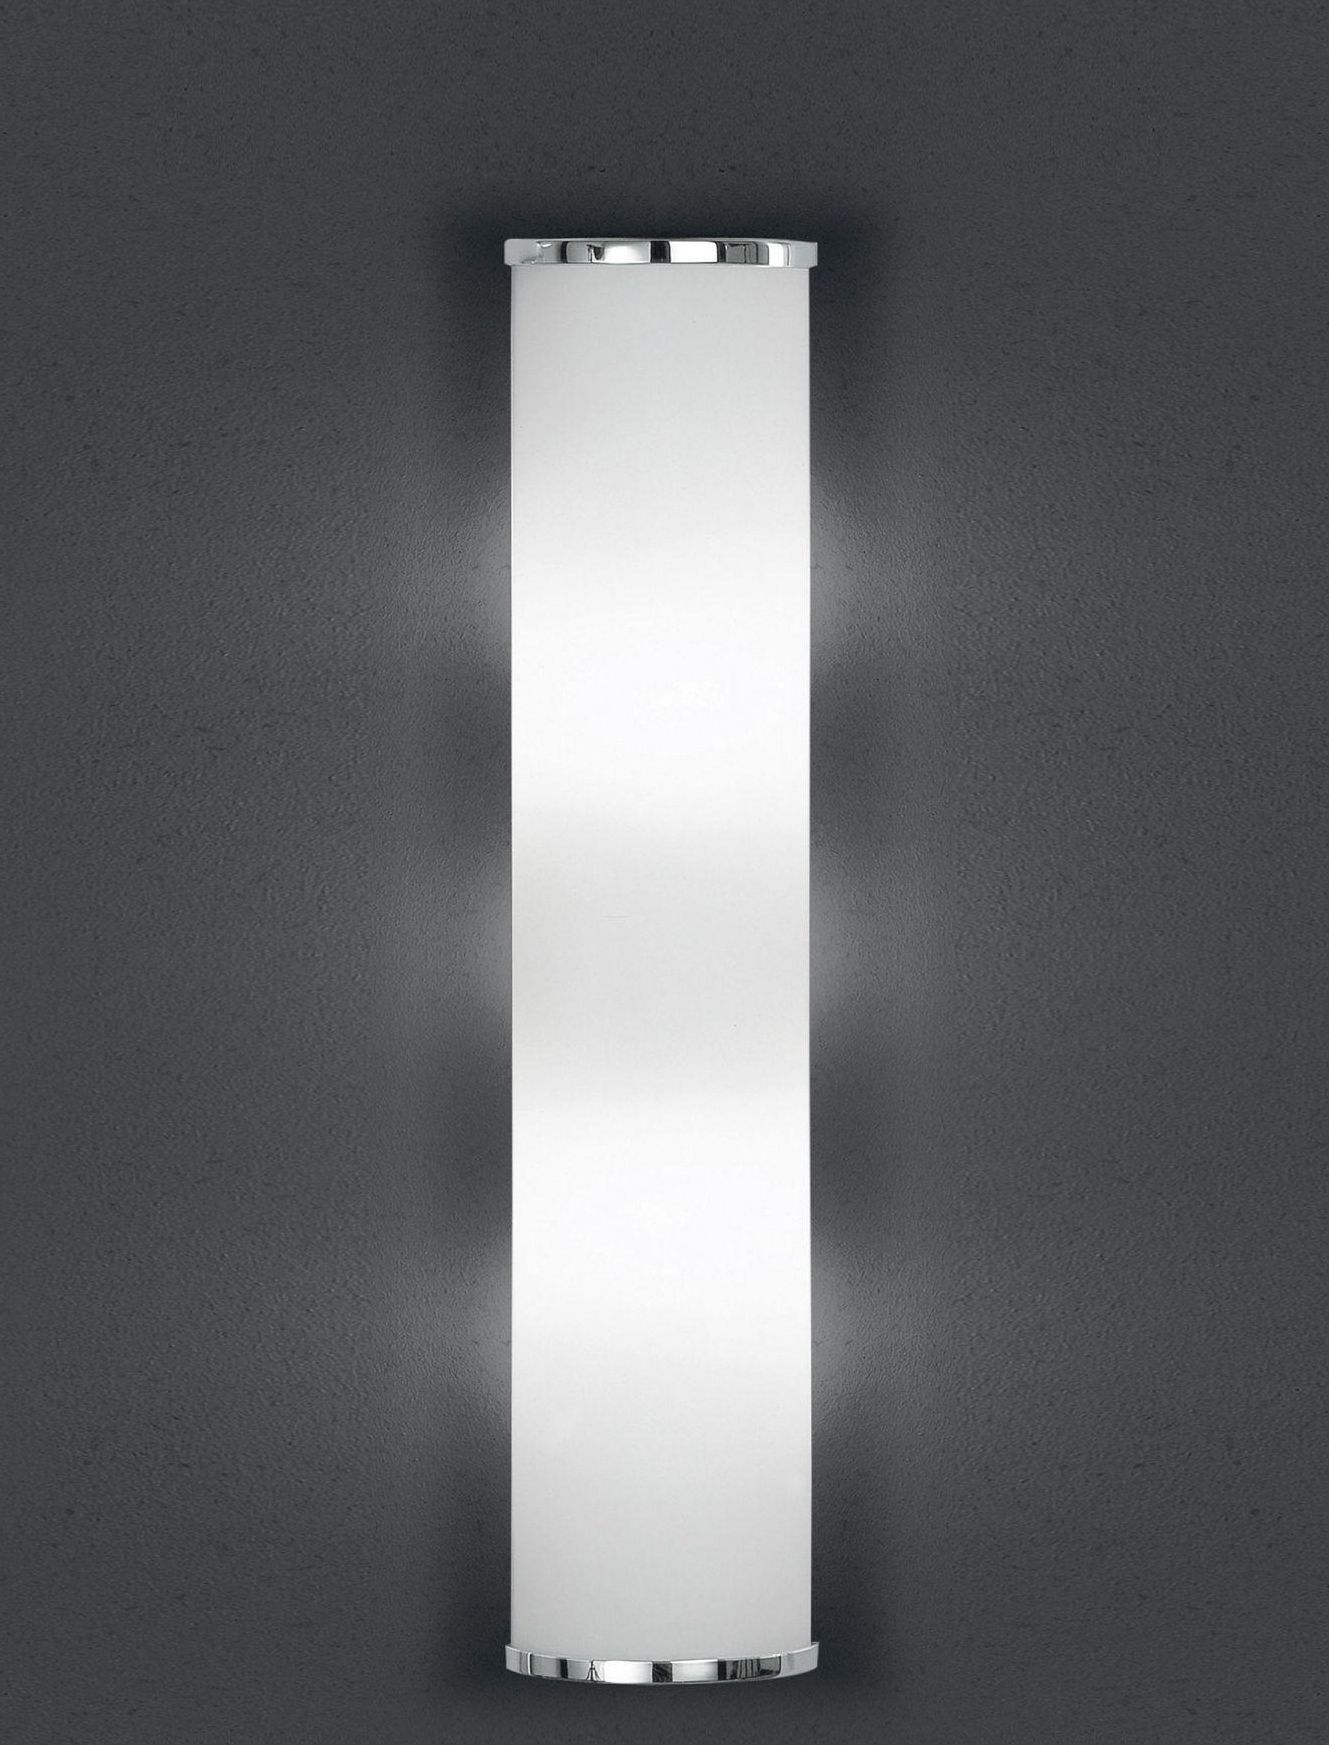 BANKAMP Leuchtenmanufaktur Moderne Wandleuchten & Wandlampen fürs Bad von BANKAMP Leuchtenmanufaktur LED-Wandleuchte Cromo 4295/530-02